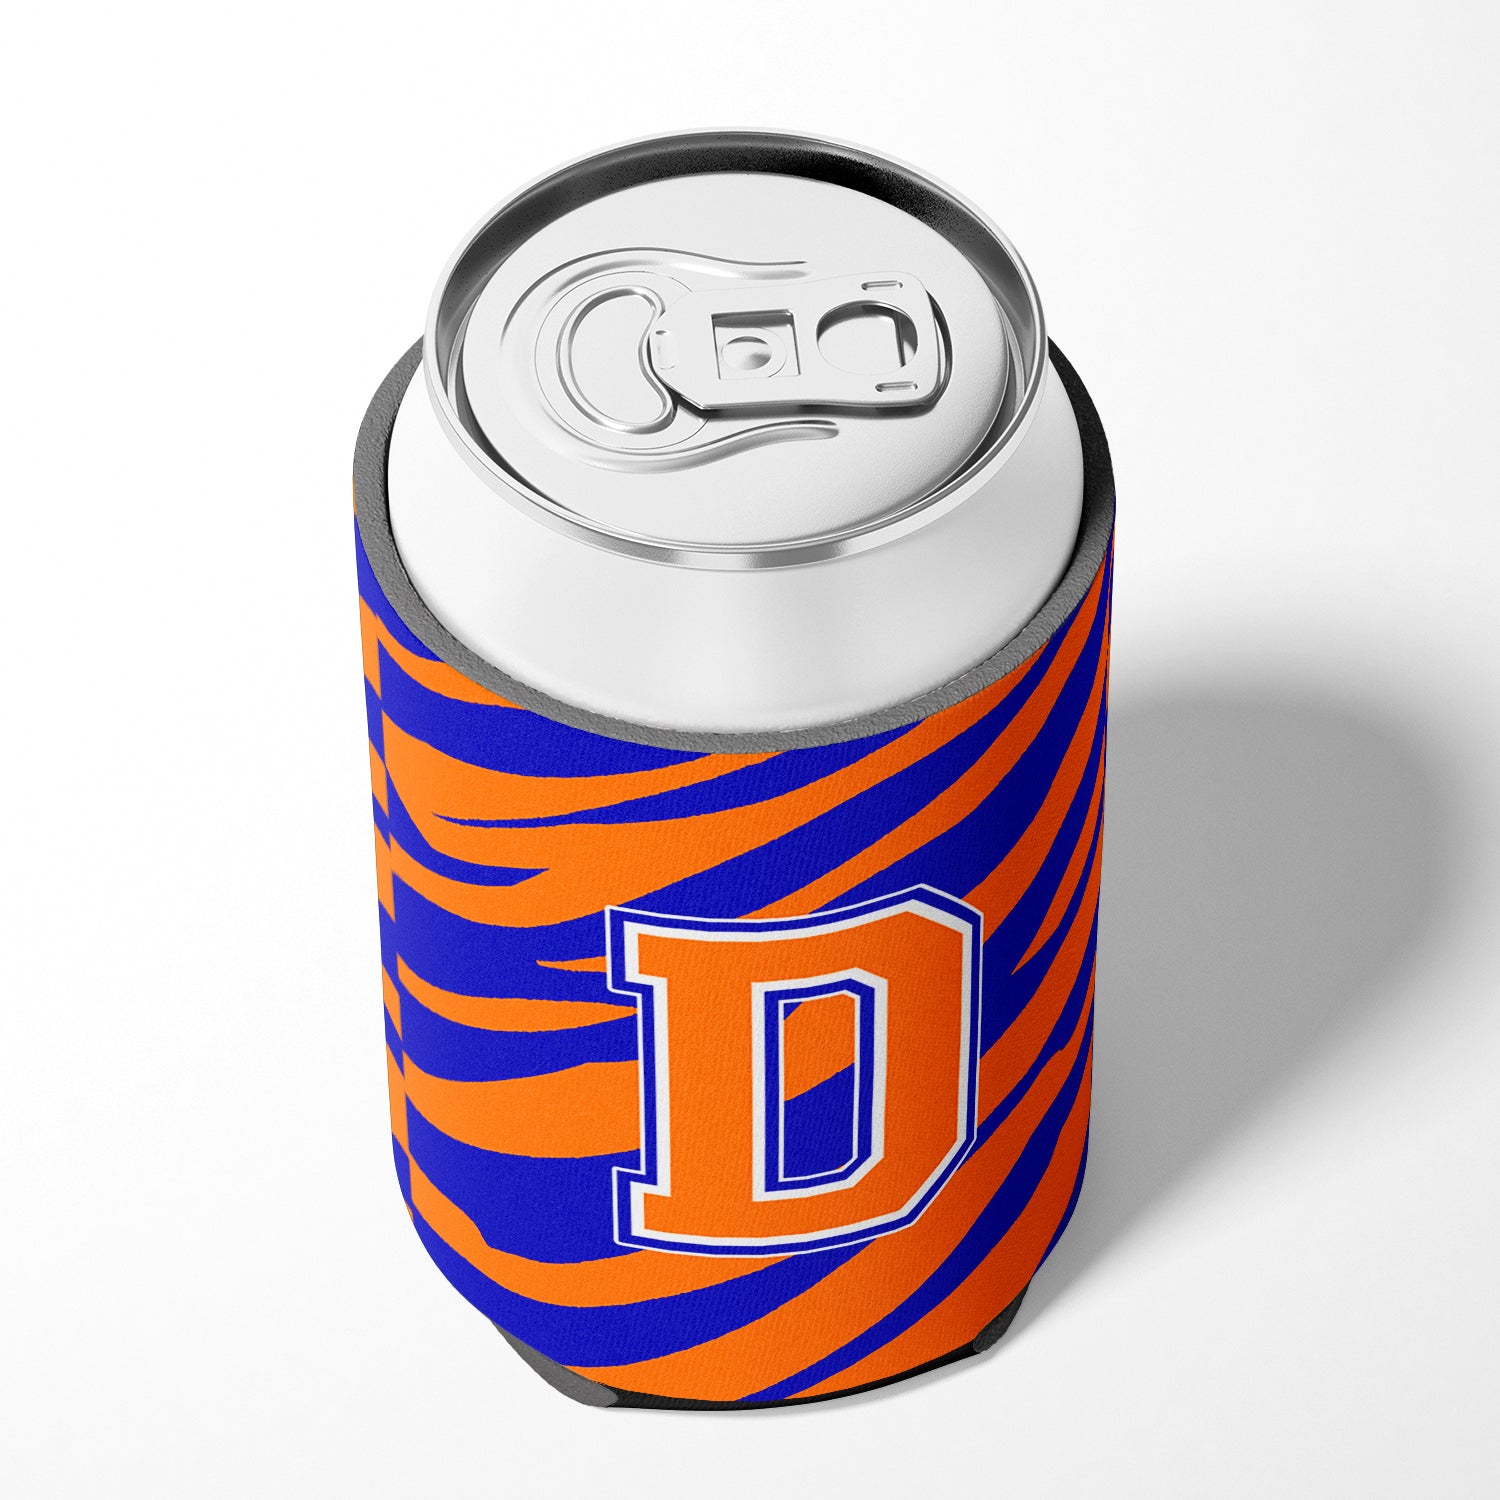 Lettre D initiale monogramme tigre rayure bleu orange canette ou bouteille boisson isolant Hugger